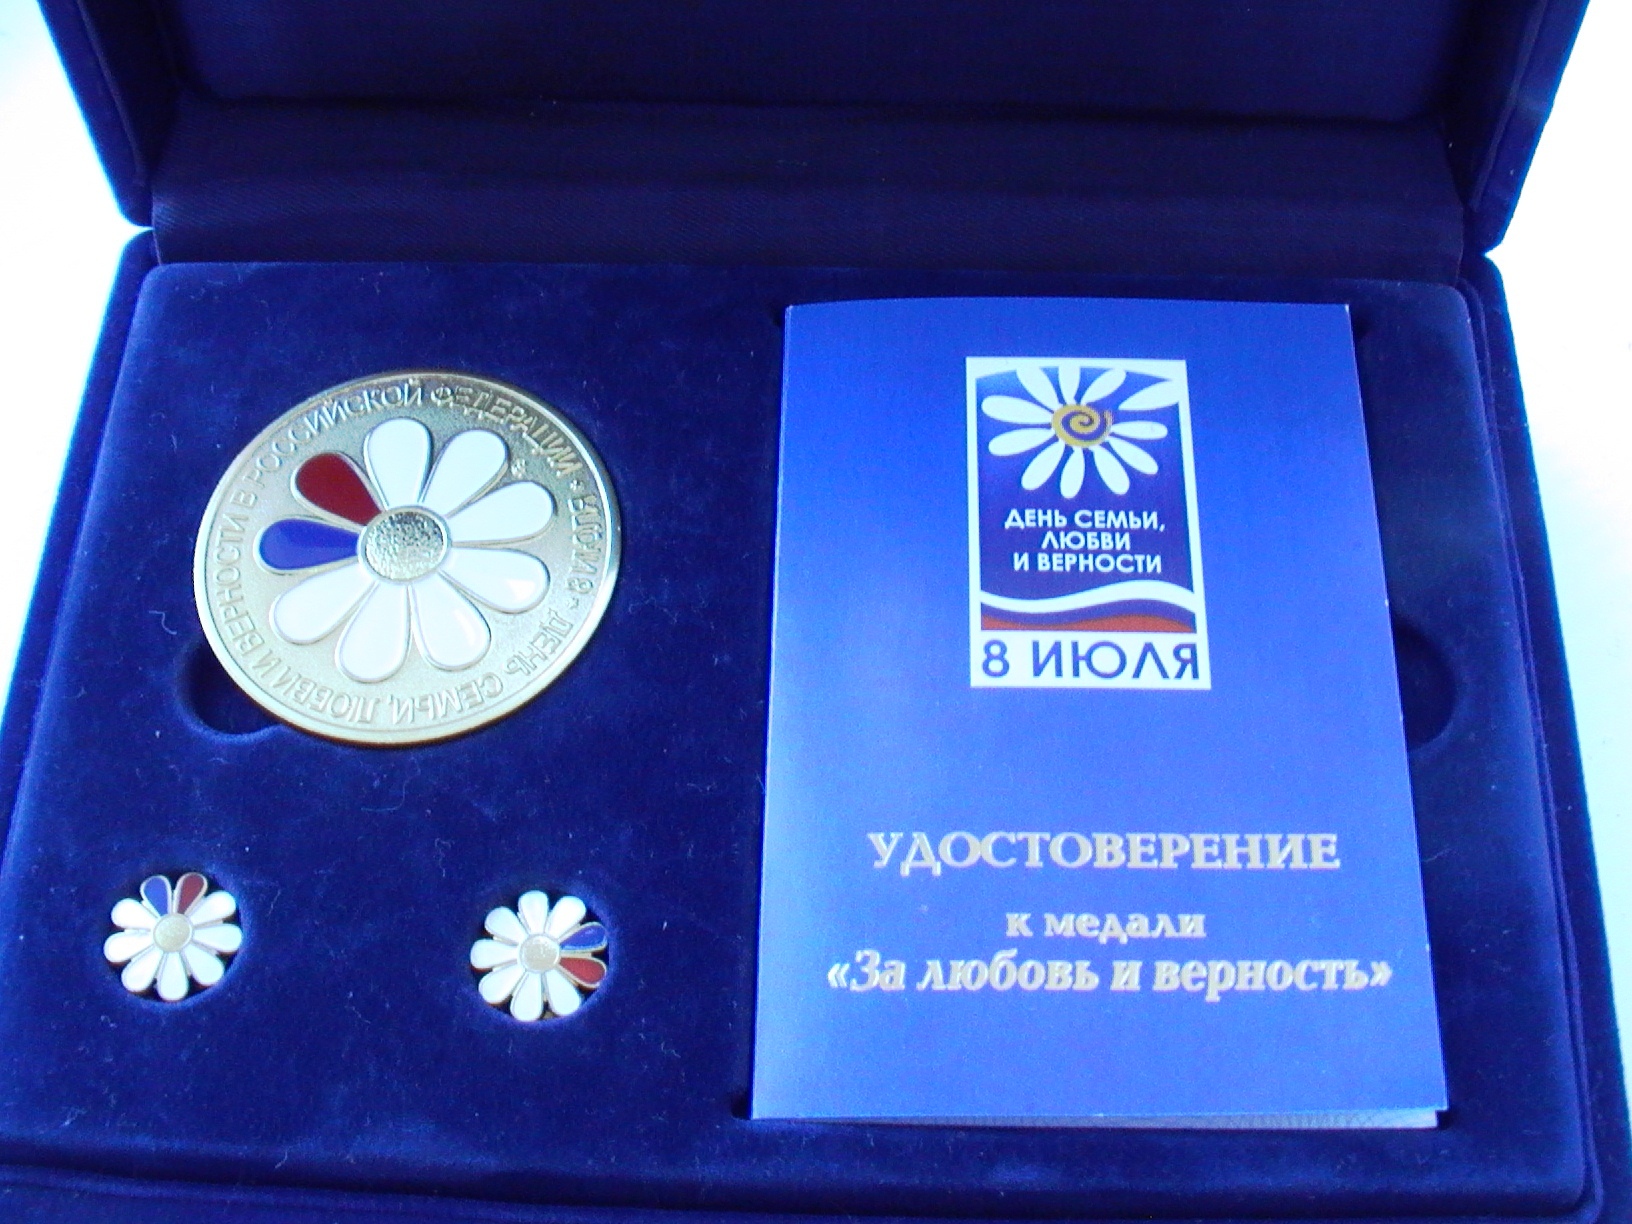 Евсюхина М.Л. Медаль "За любовь и верность"